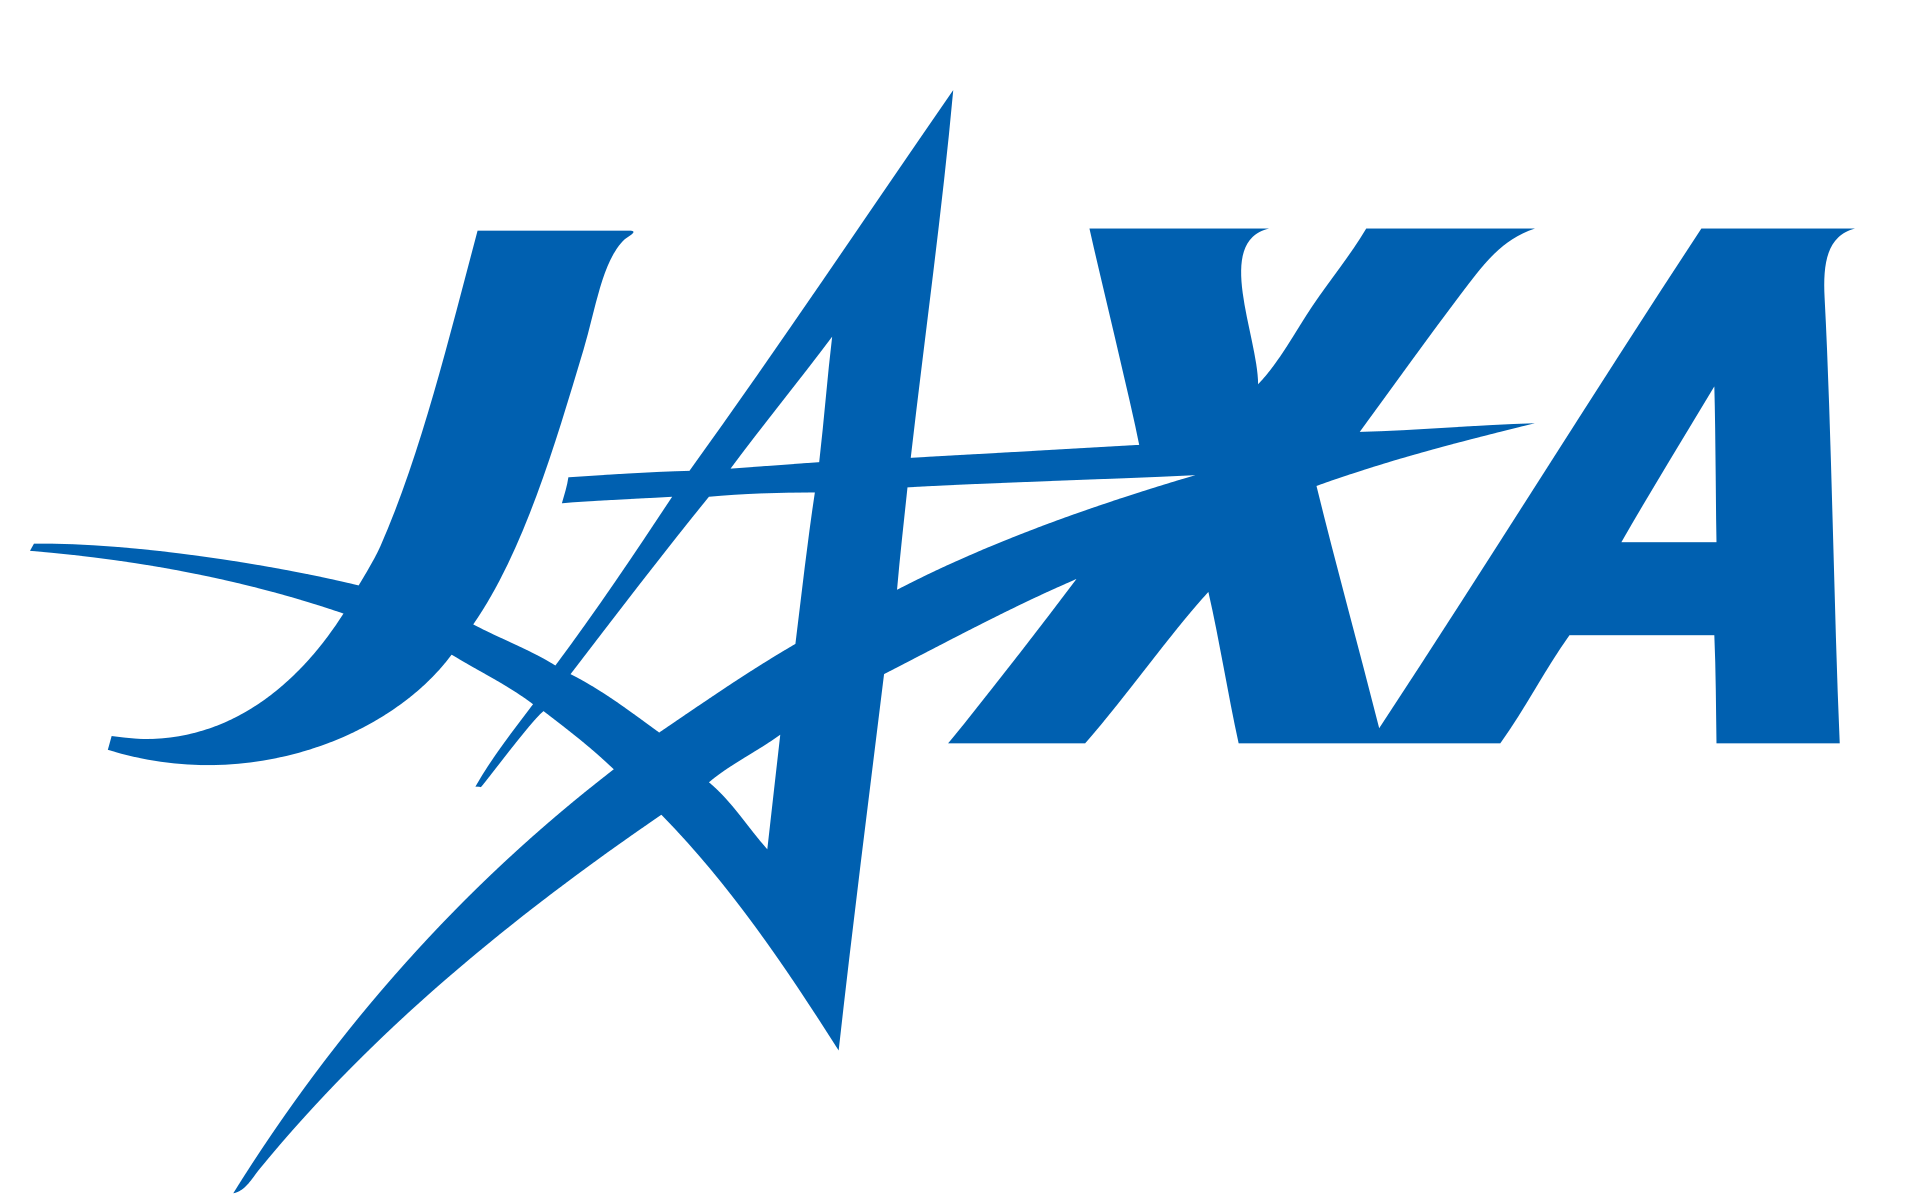 The Japan Aerospace Exploration Agency logo.